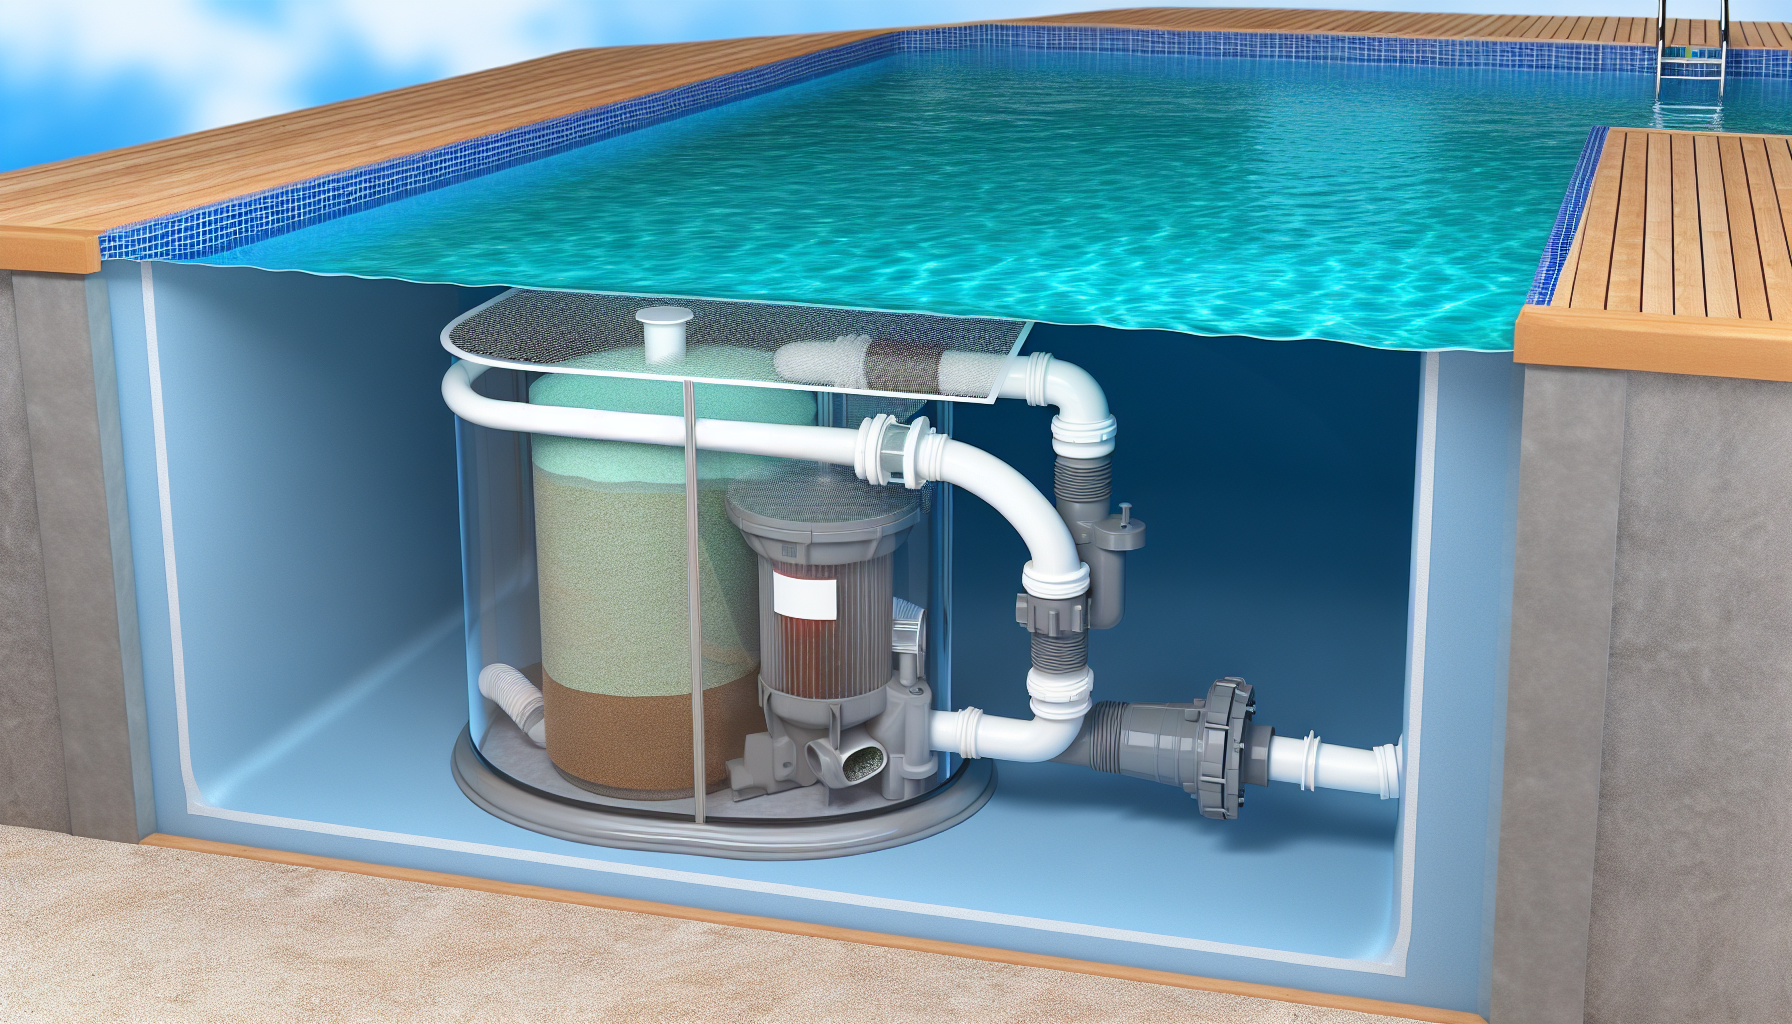 Querschnittsansicht eines Swimmingpools mit integriertem Filtersystem.